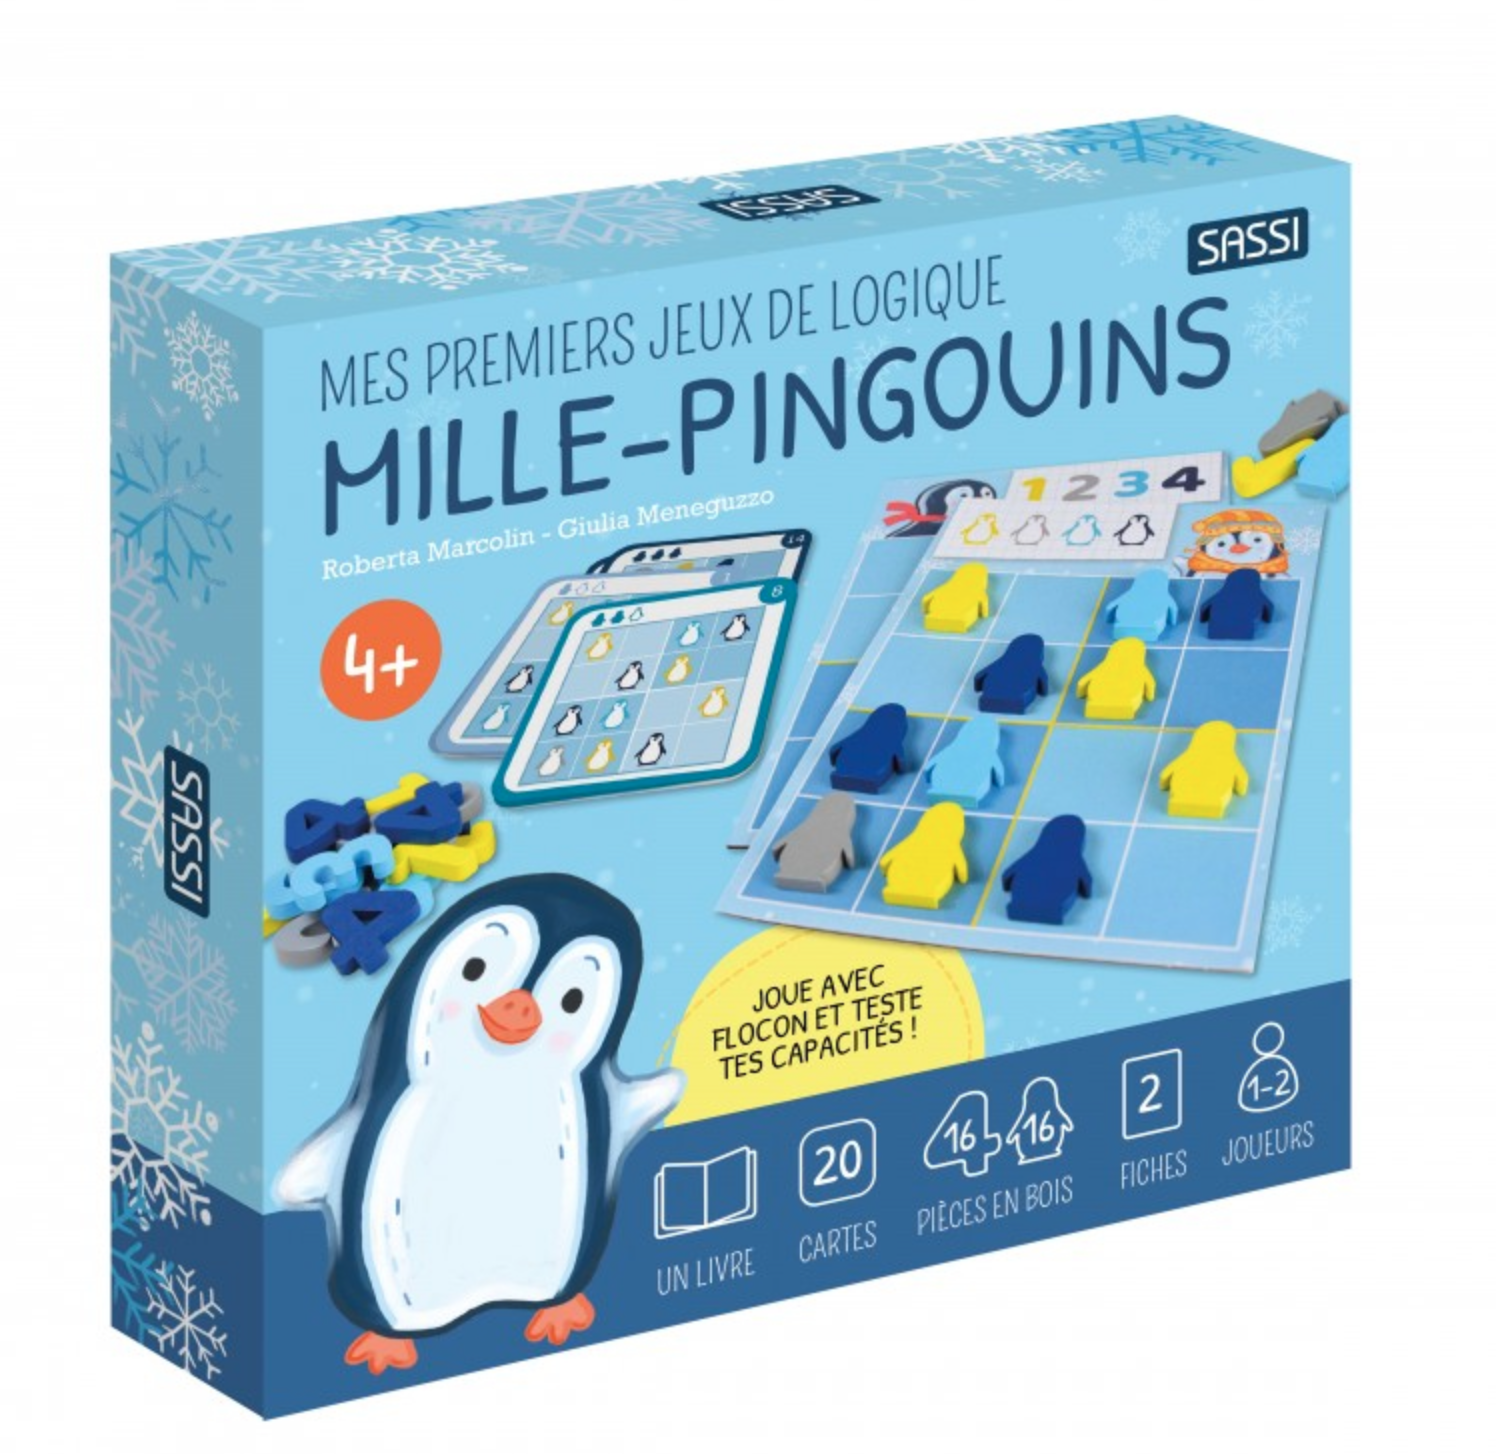 Mille pingouins jeux de logique